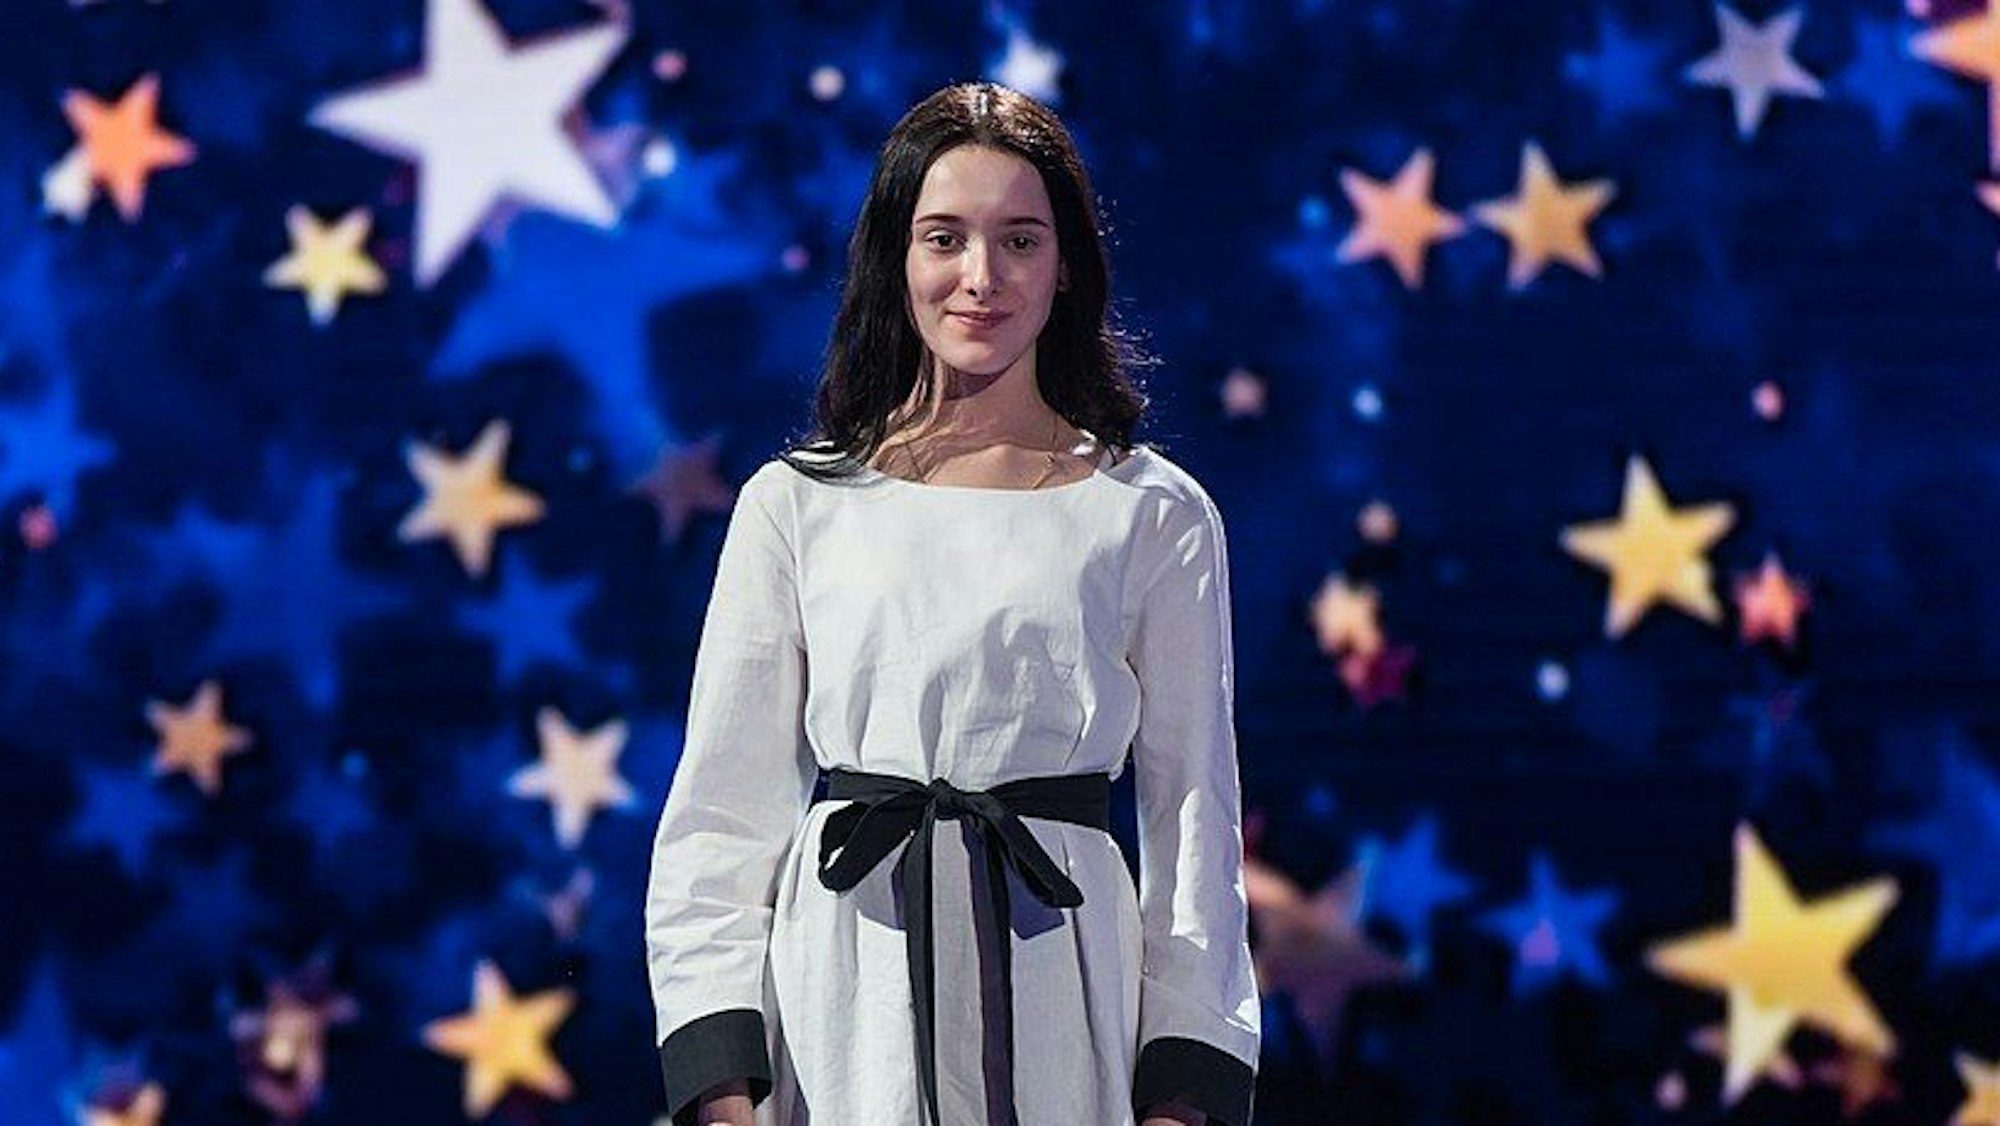 Eden Golan steht auf der Bühne, mit Sternenhimmel im Hintergrund.